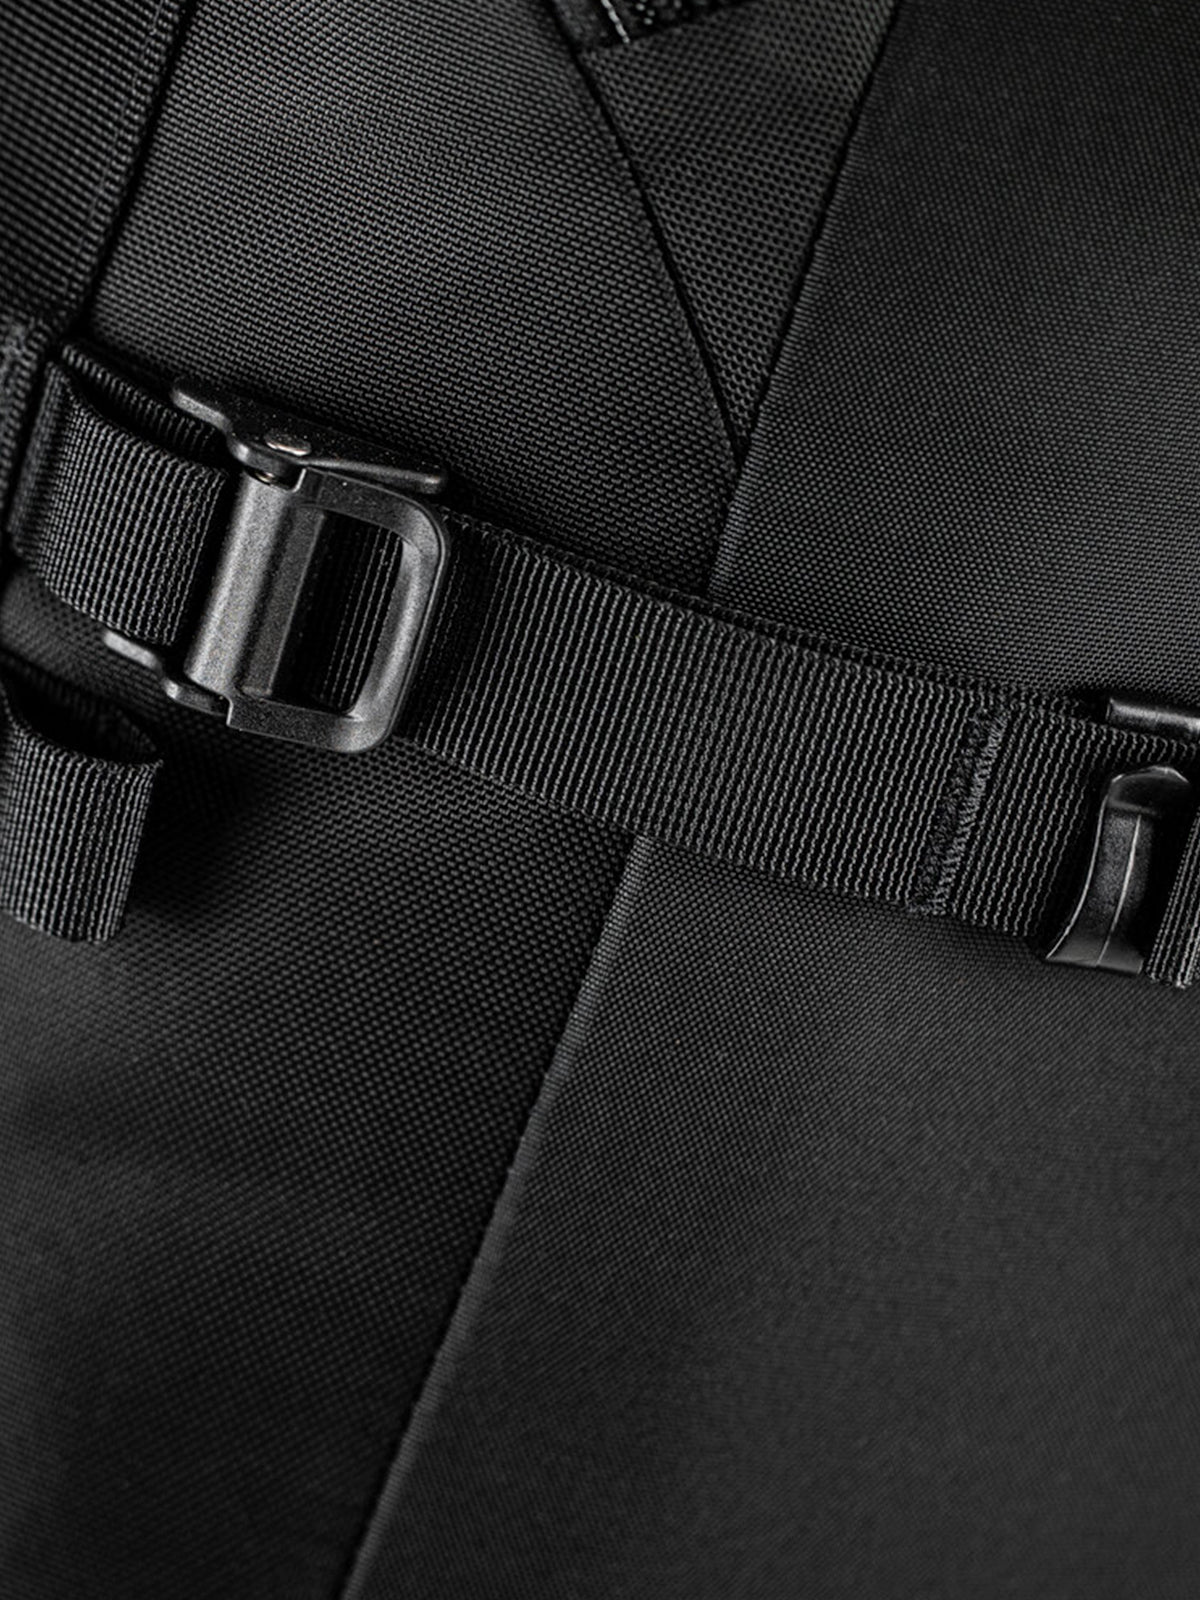 Kriega R22 Backpack strap detail